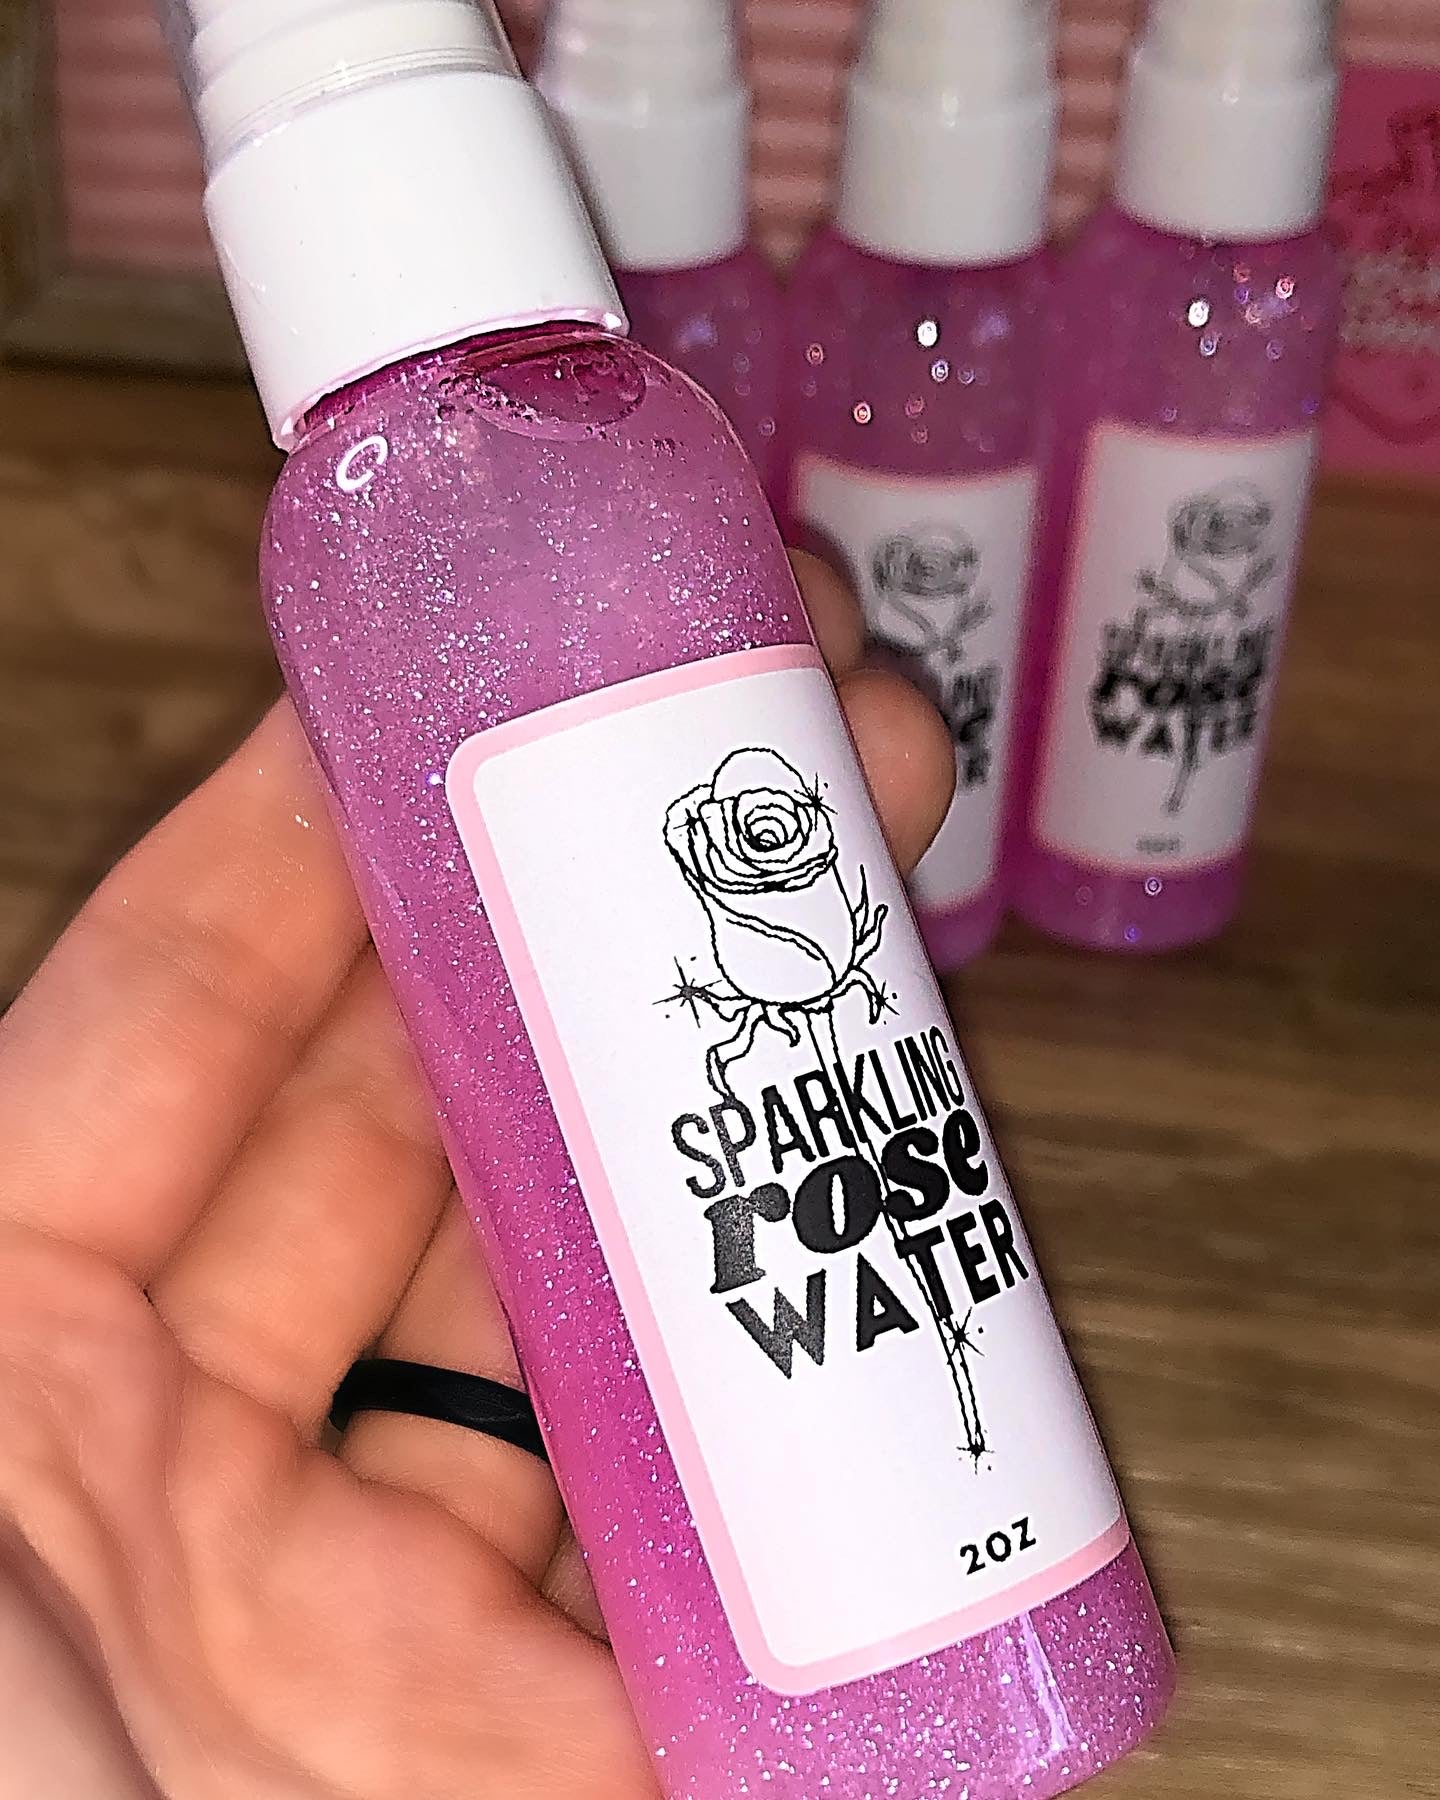 Sparkling rose water